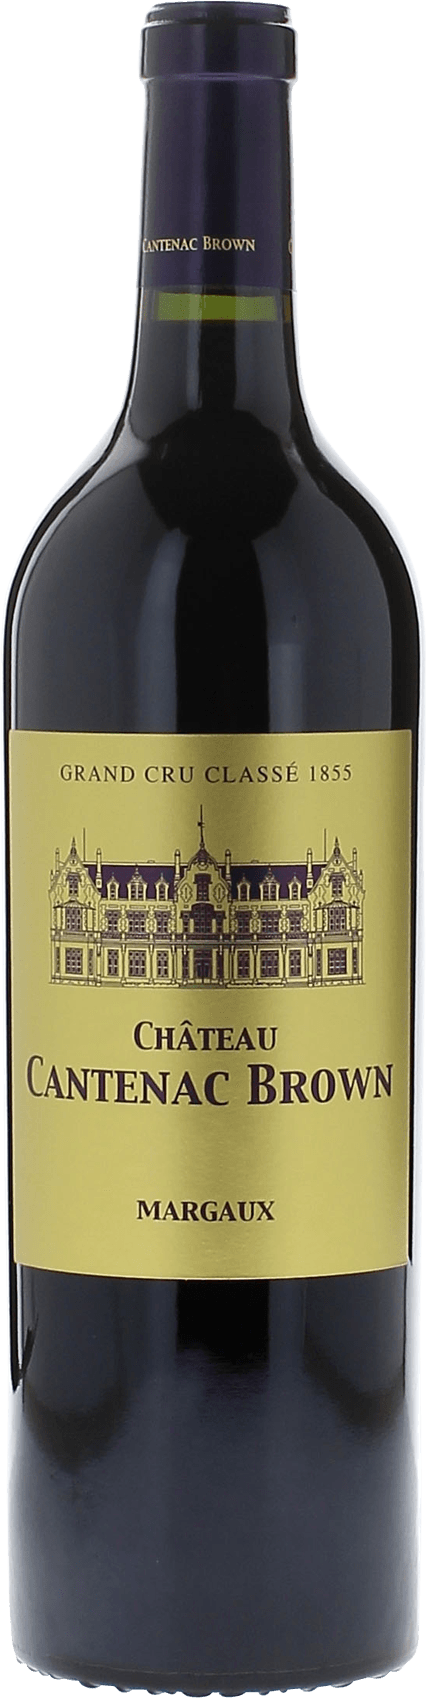 Cantenac brown 1997 2me Grand cru class Margaux, Bordeaux rouge